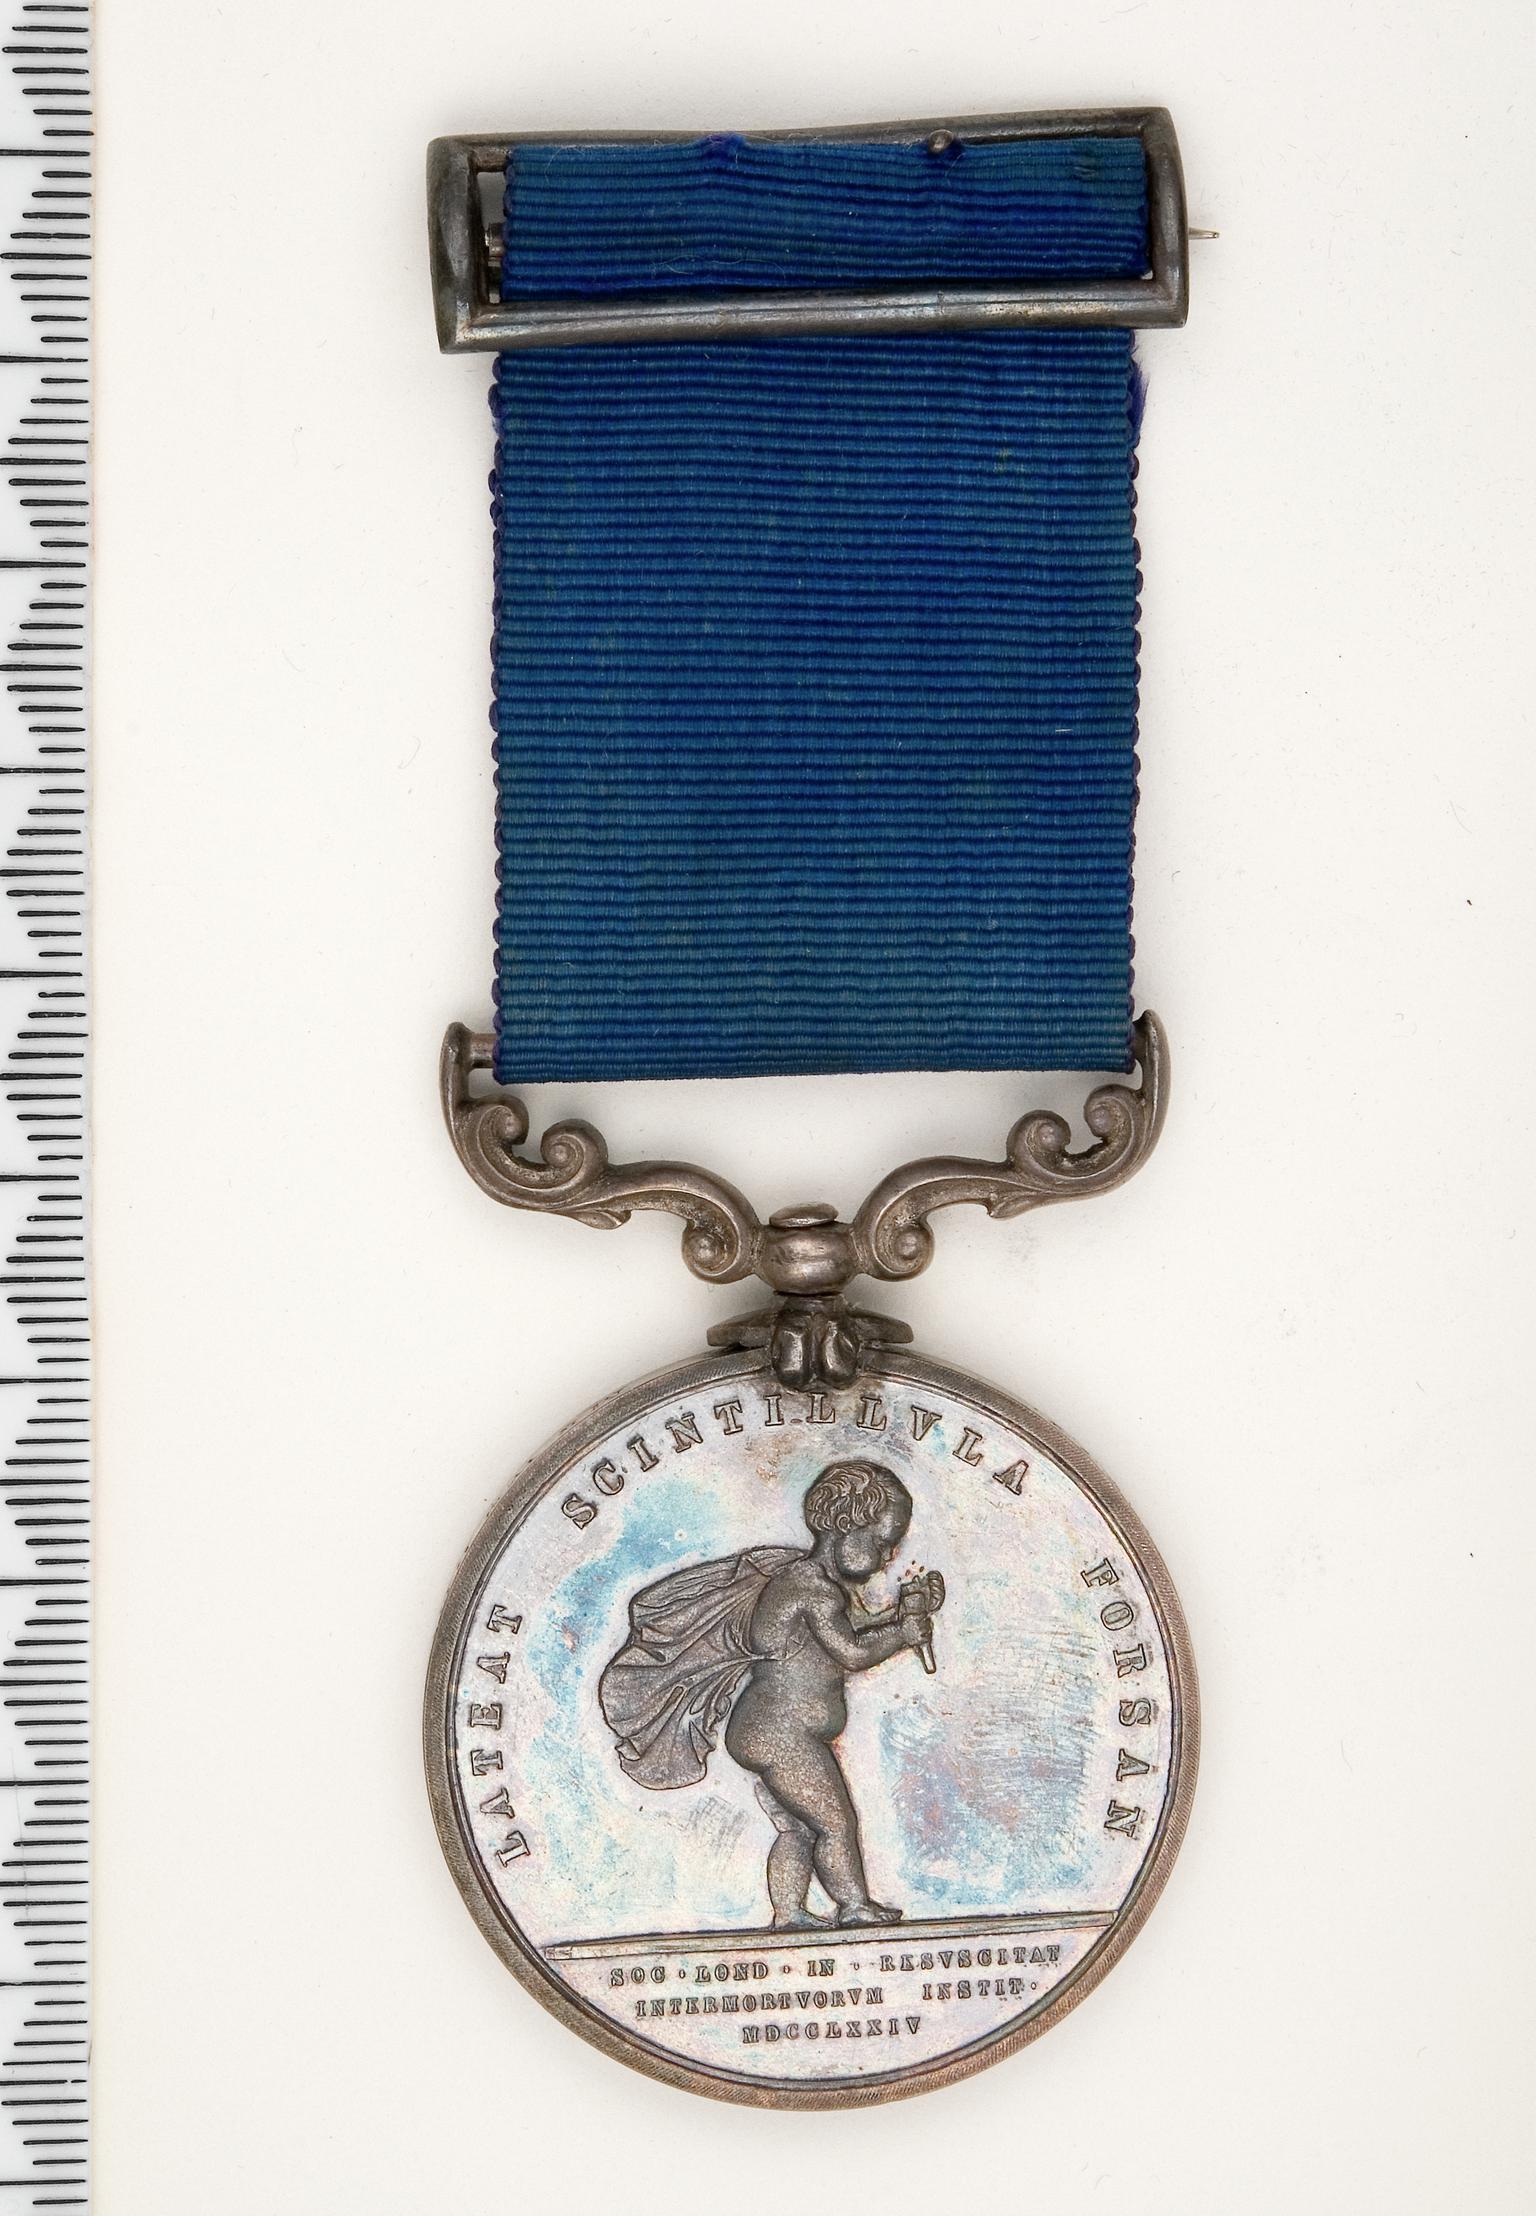 Royal Humane Society Medal